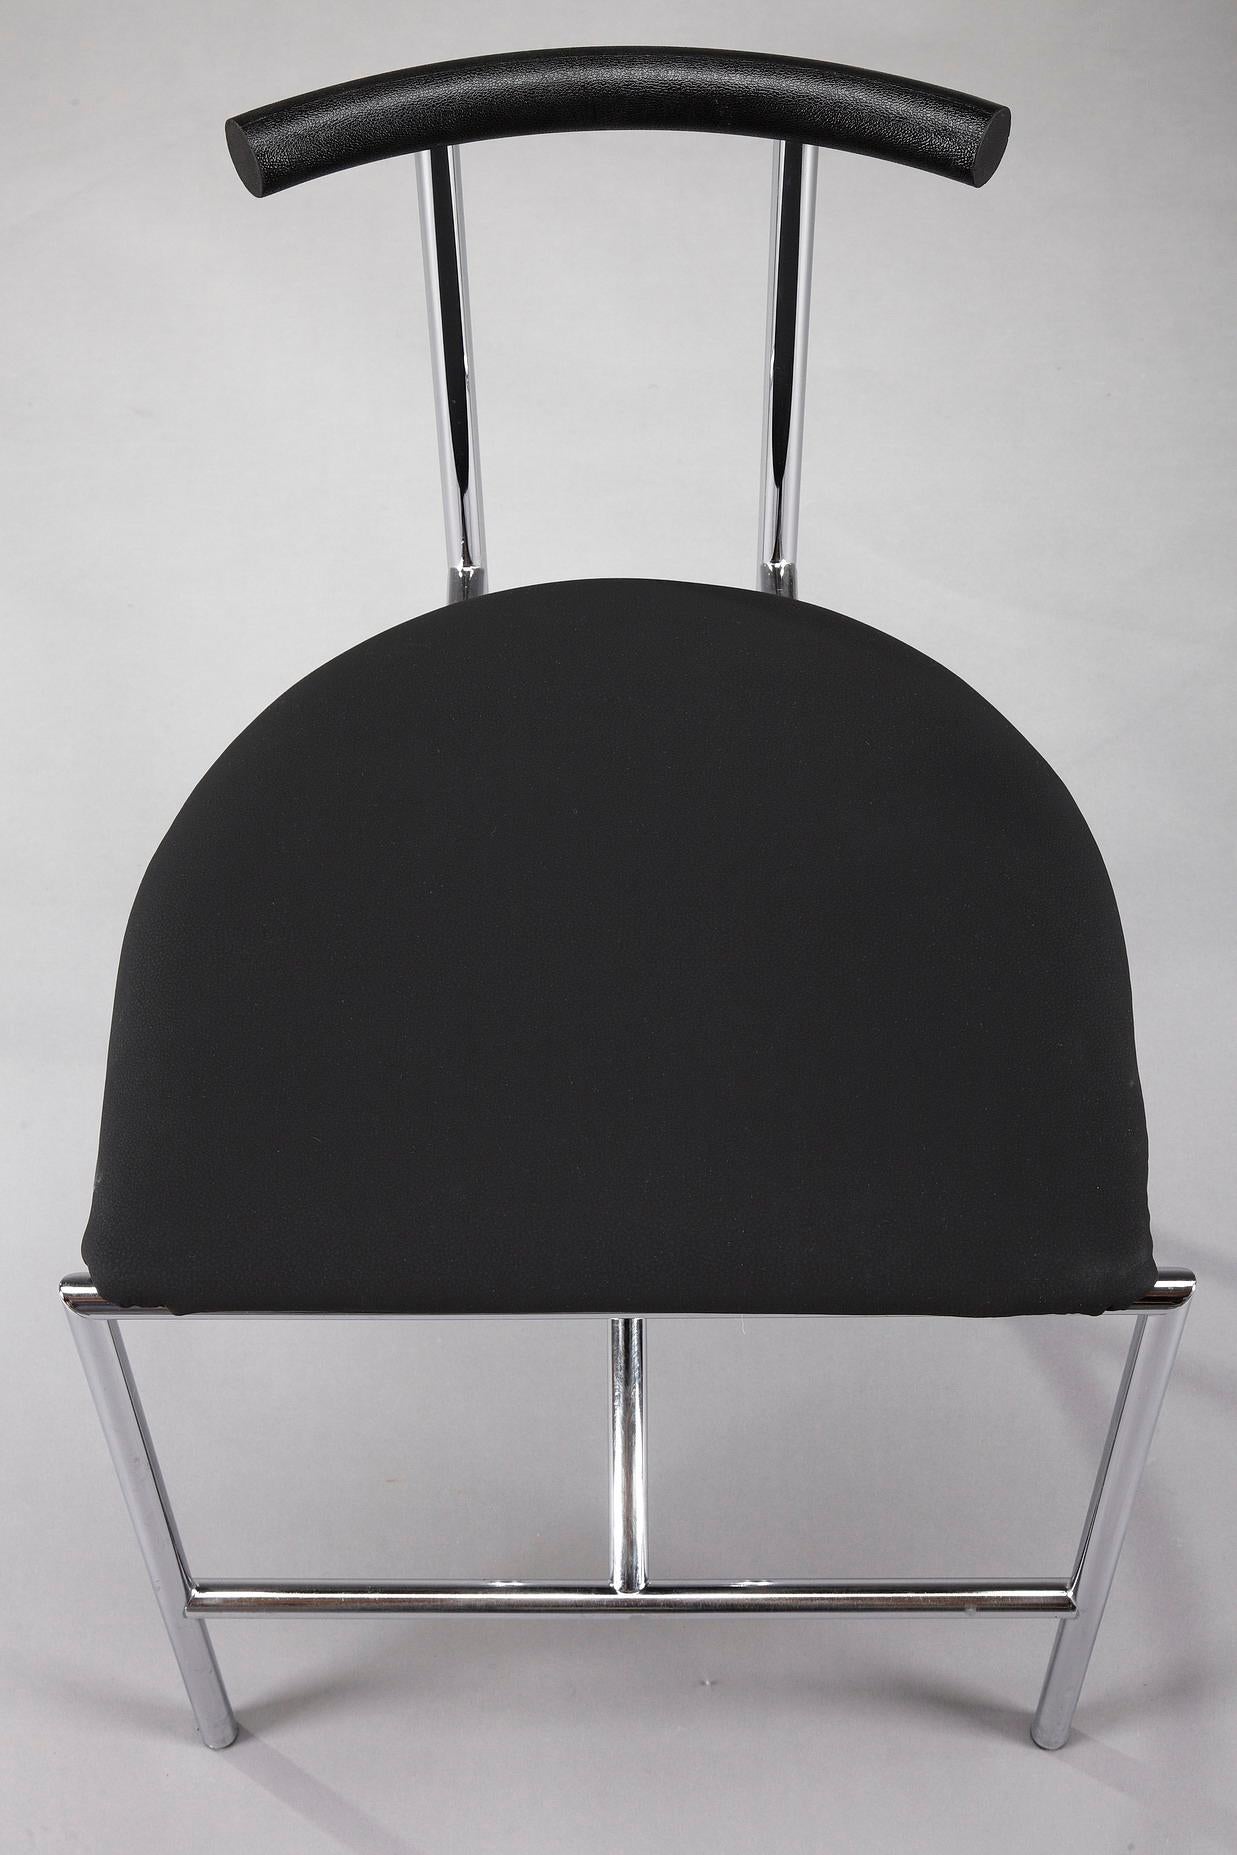 3 Bieffeplast Tokyo Chairs by Rodney Kinsman 3